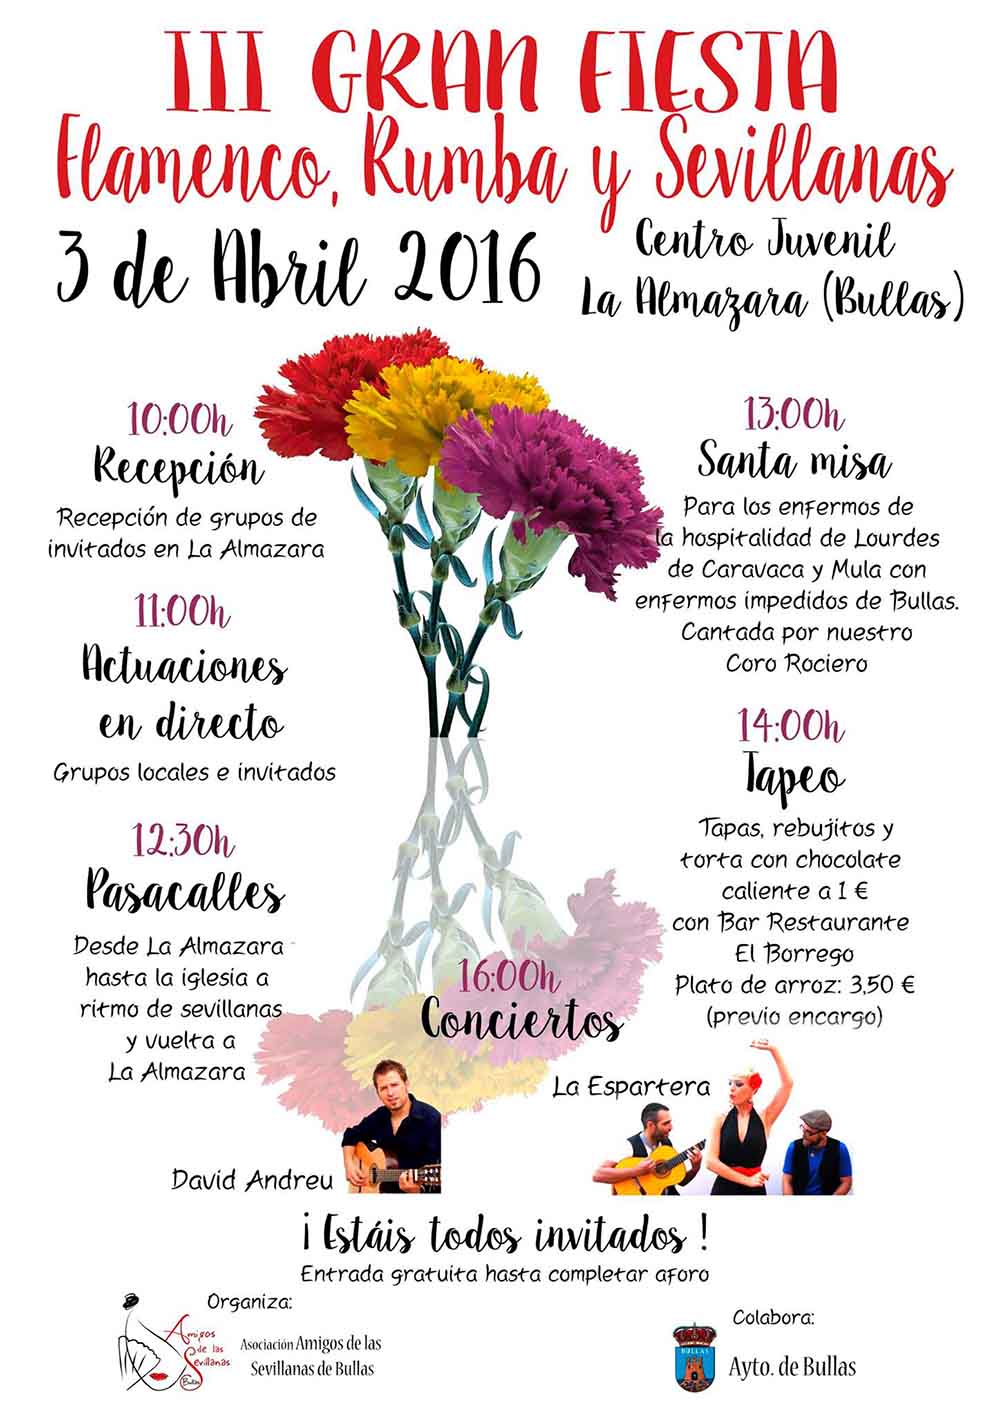 La III Gran Fiesta Flamenca, Rumba y Sevillanas se celebre en Bullas el 3 de abril